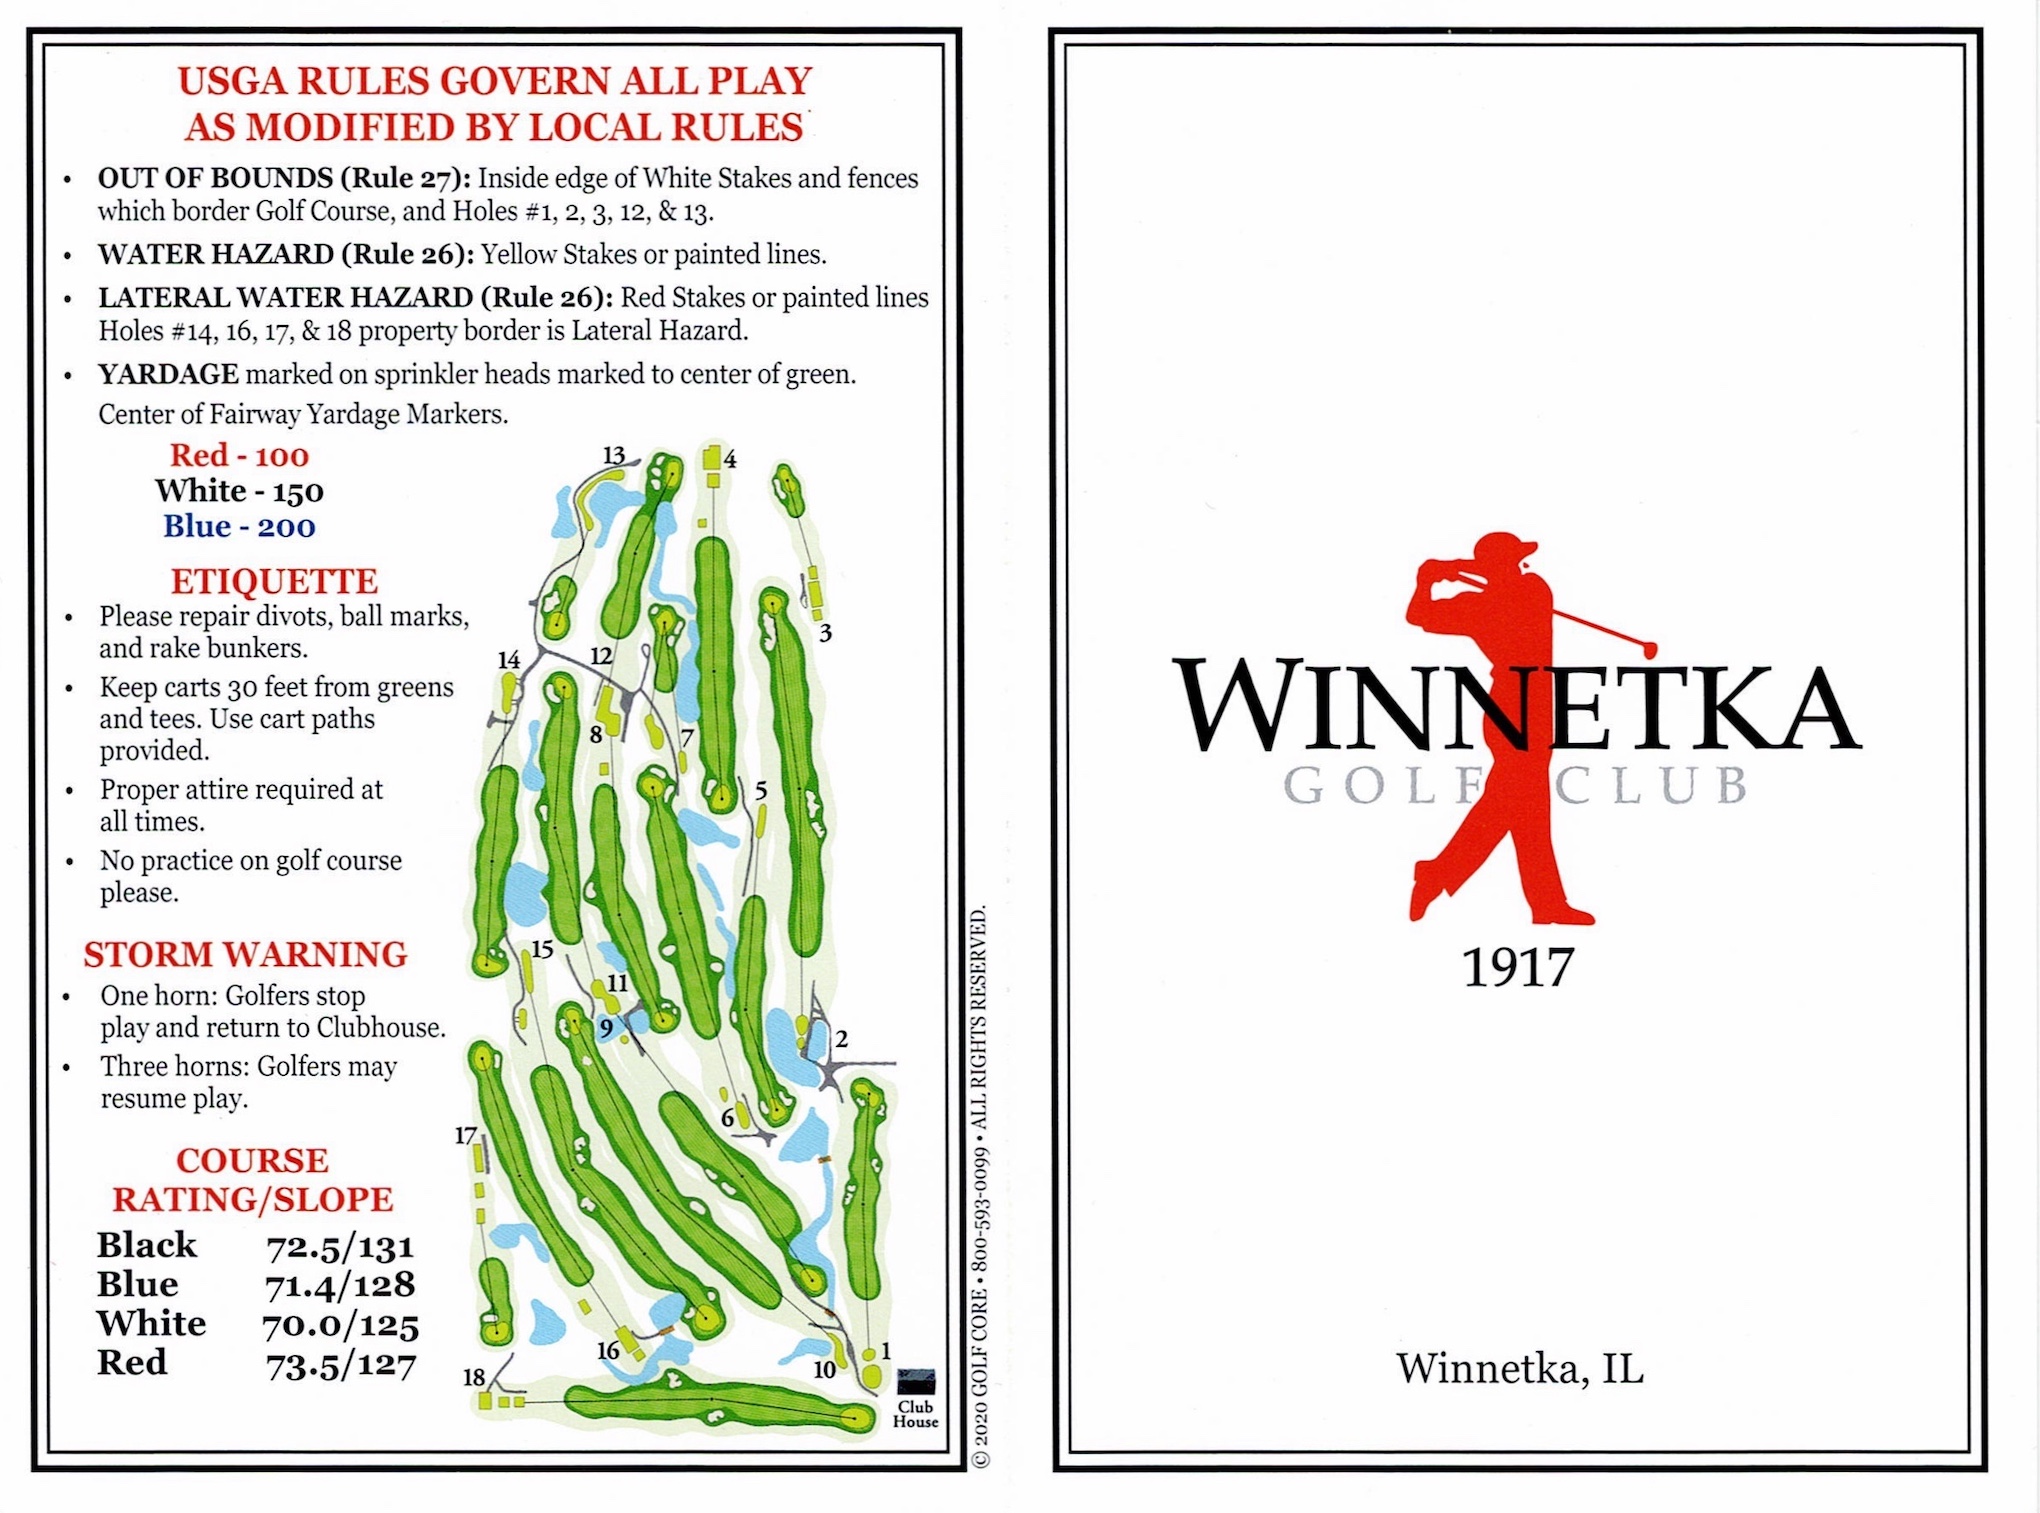 Scan of the scorecard from Winnetka Golf Club in Winnetka, Illinois. 